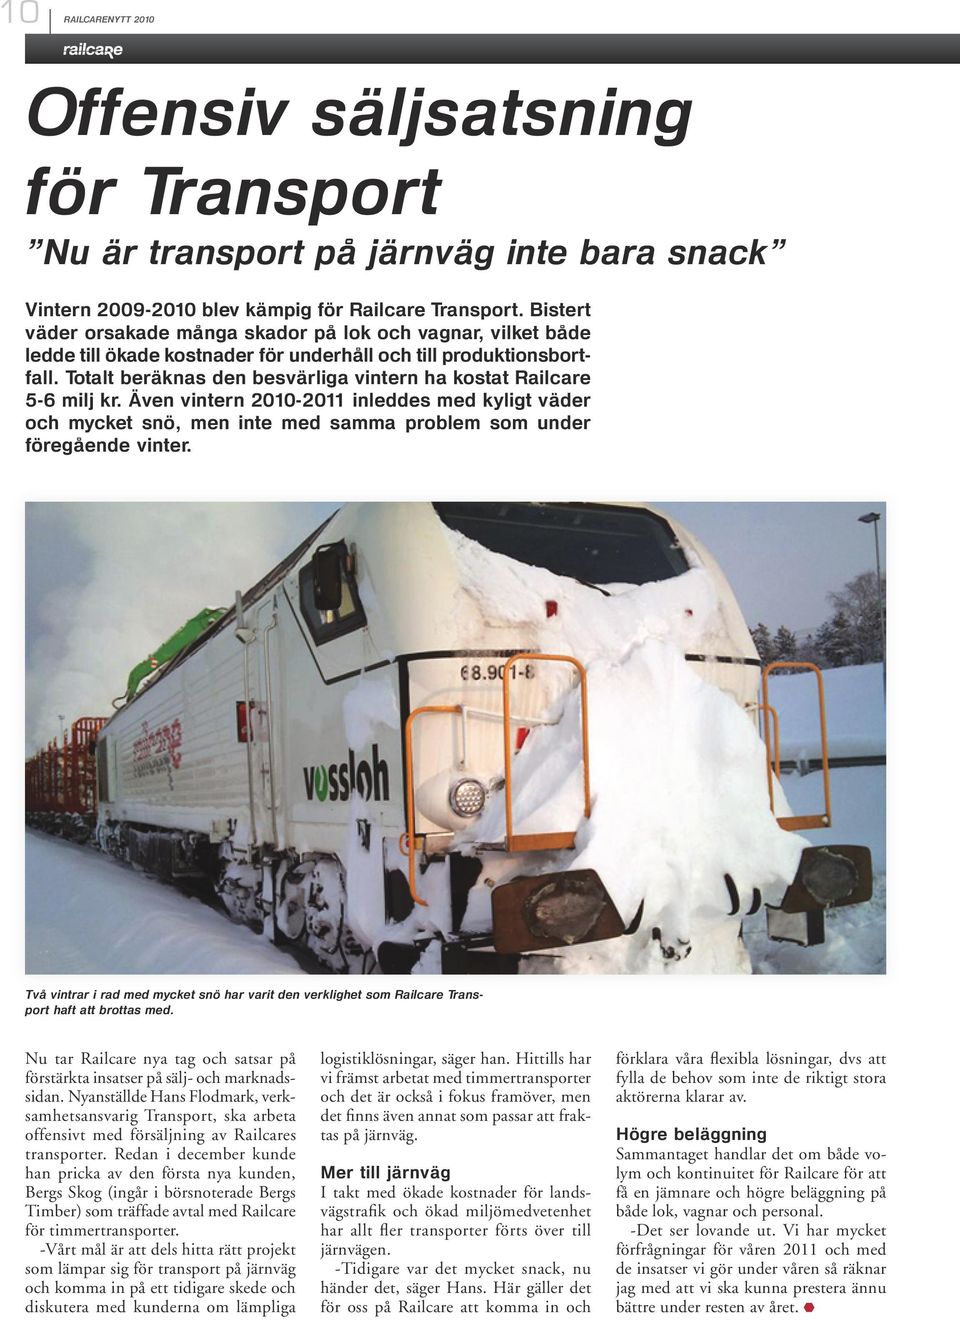 Totalt beräknas den besvärliga vintern ha kostat Railcare 5-6 milj kr. Även vintern 2010-2011 inleddes med kyligt väder och mycket snö, men inte med samma problem som under föregående vinter.